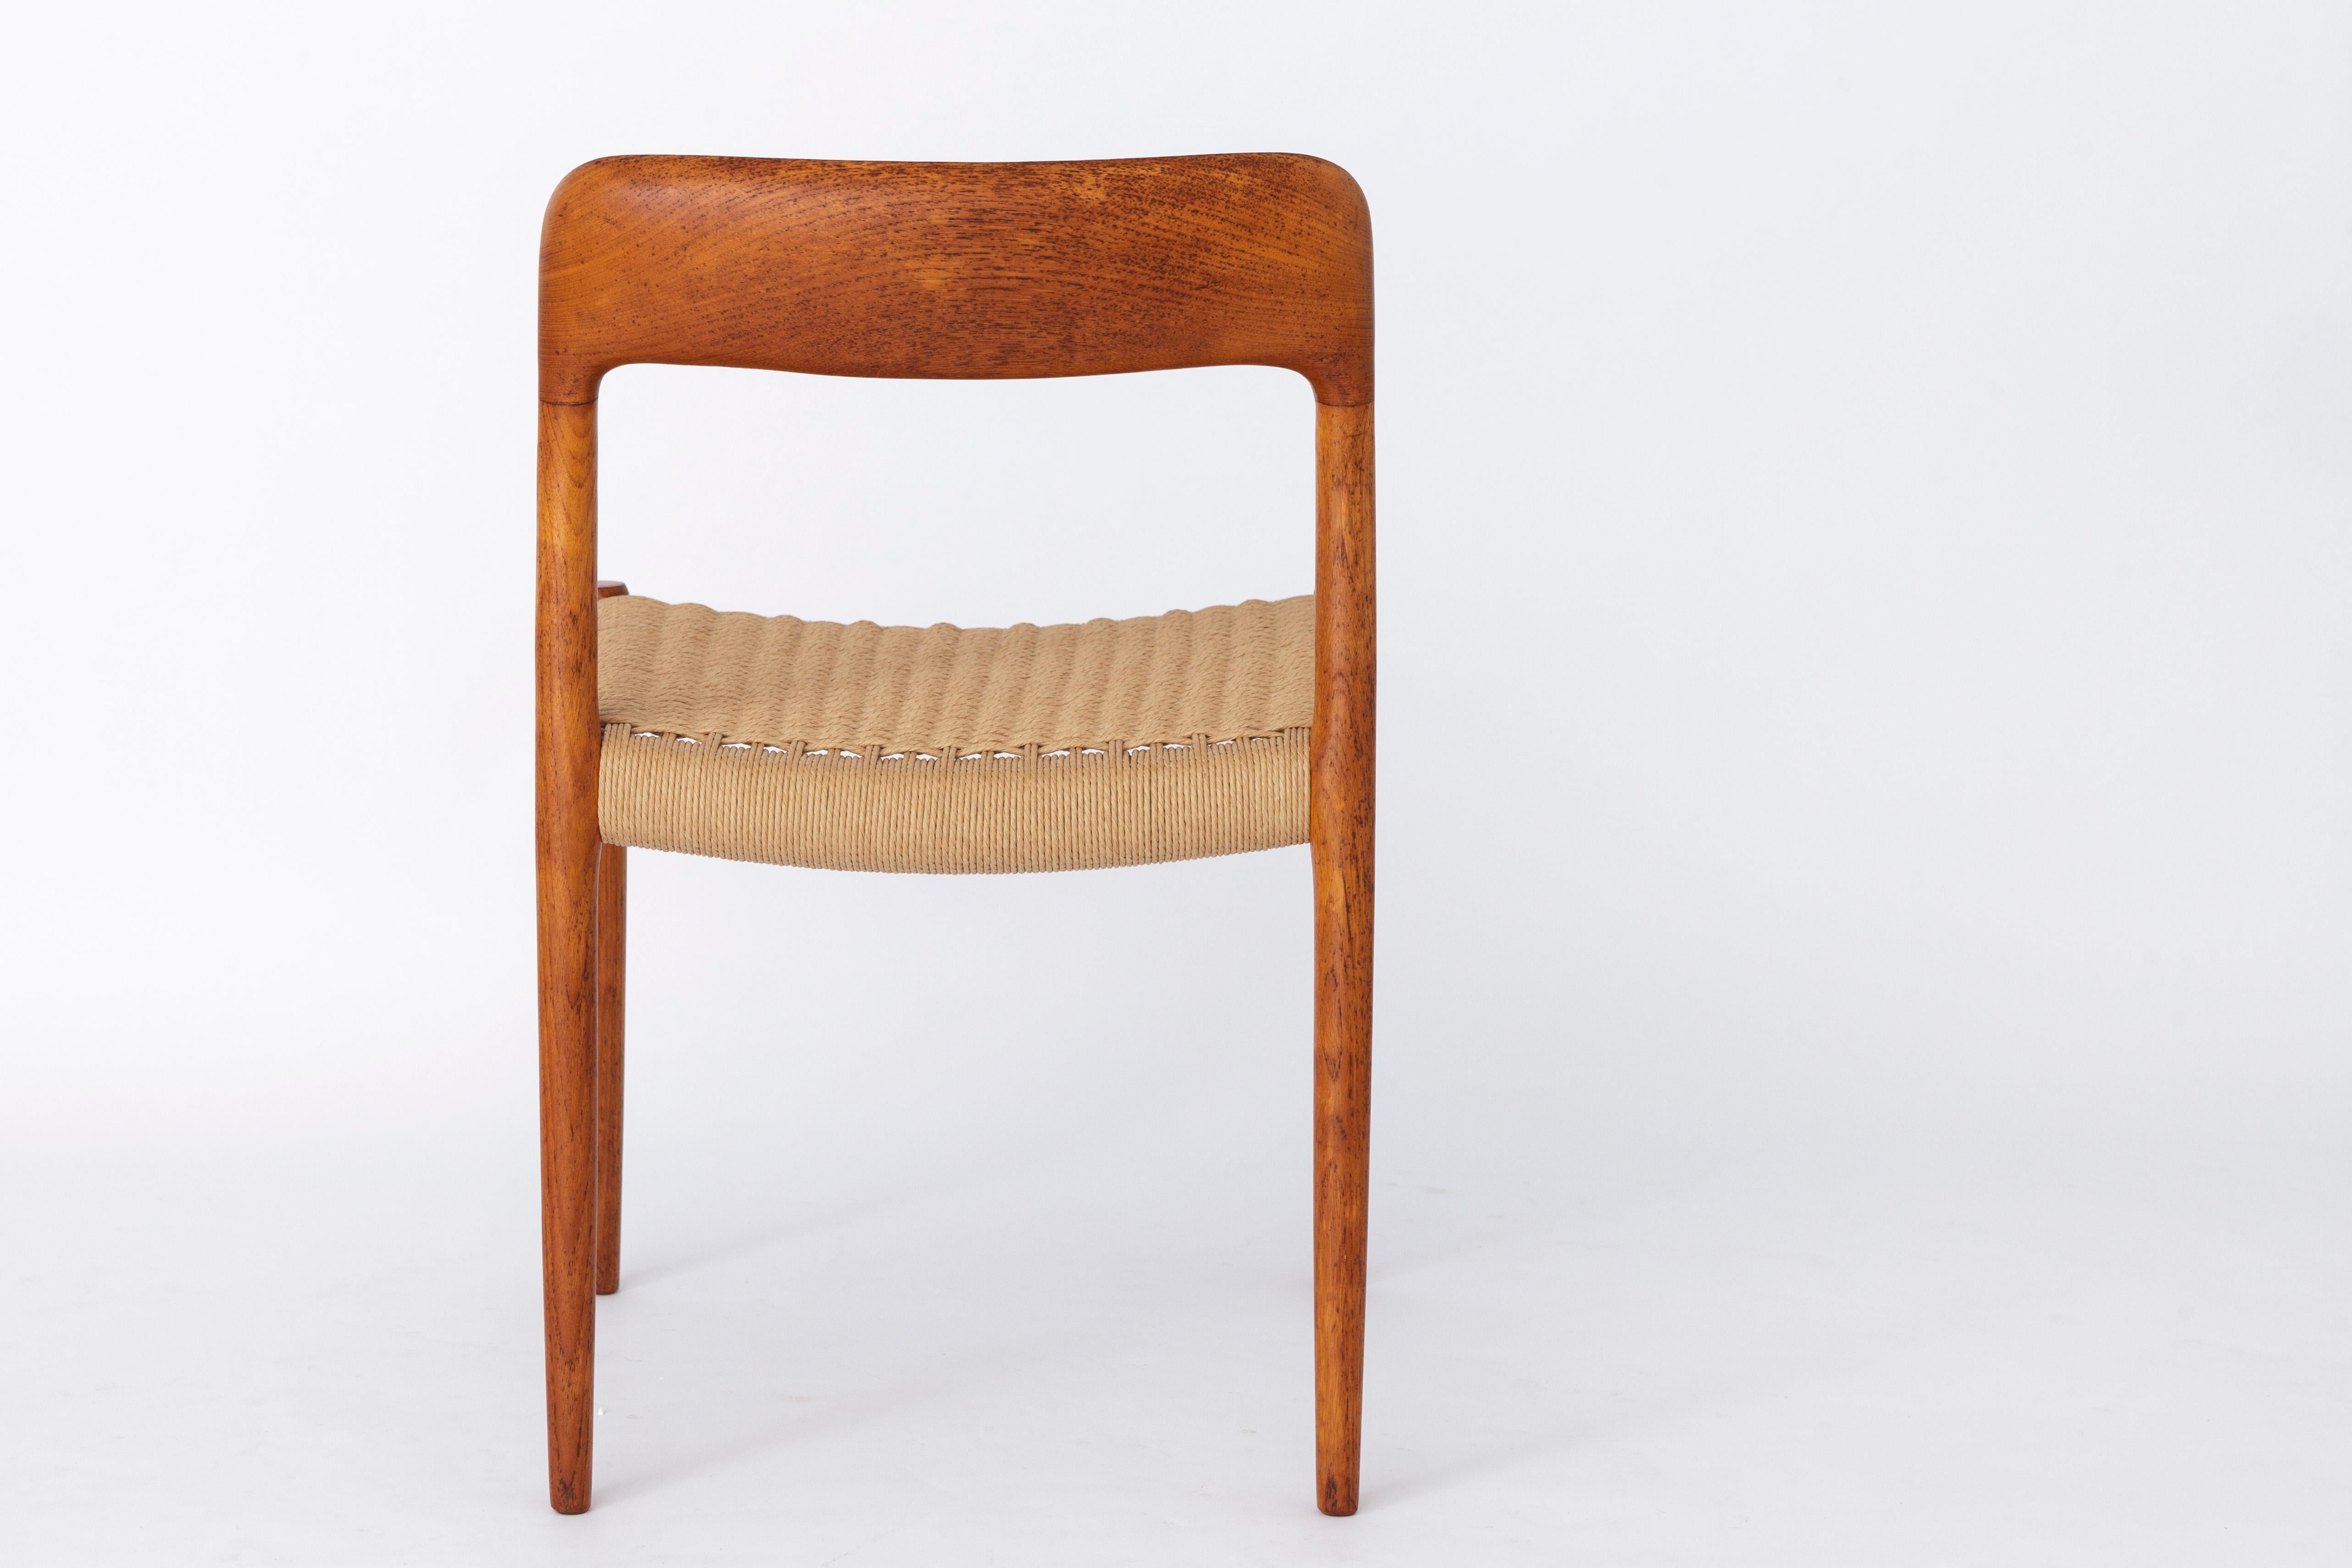 Teak Niels Moller Vintage Chair 1950s Danish Papercord